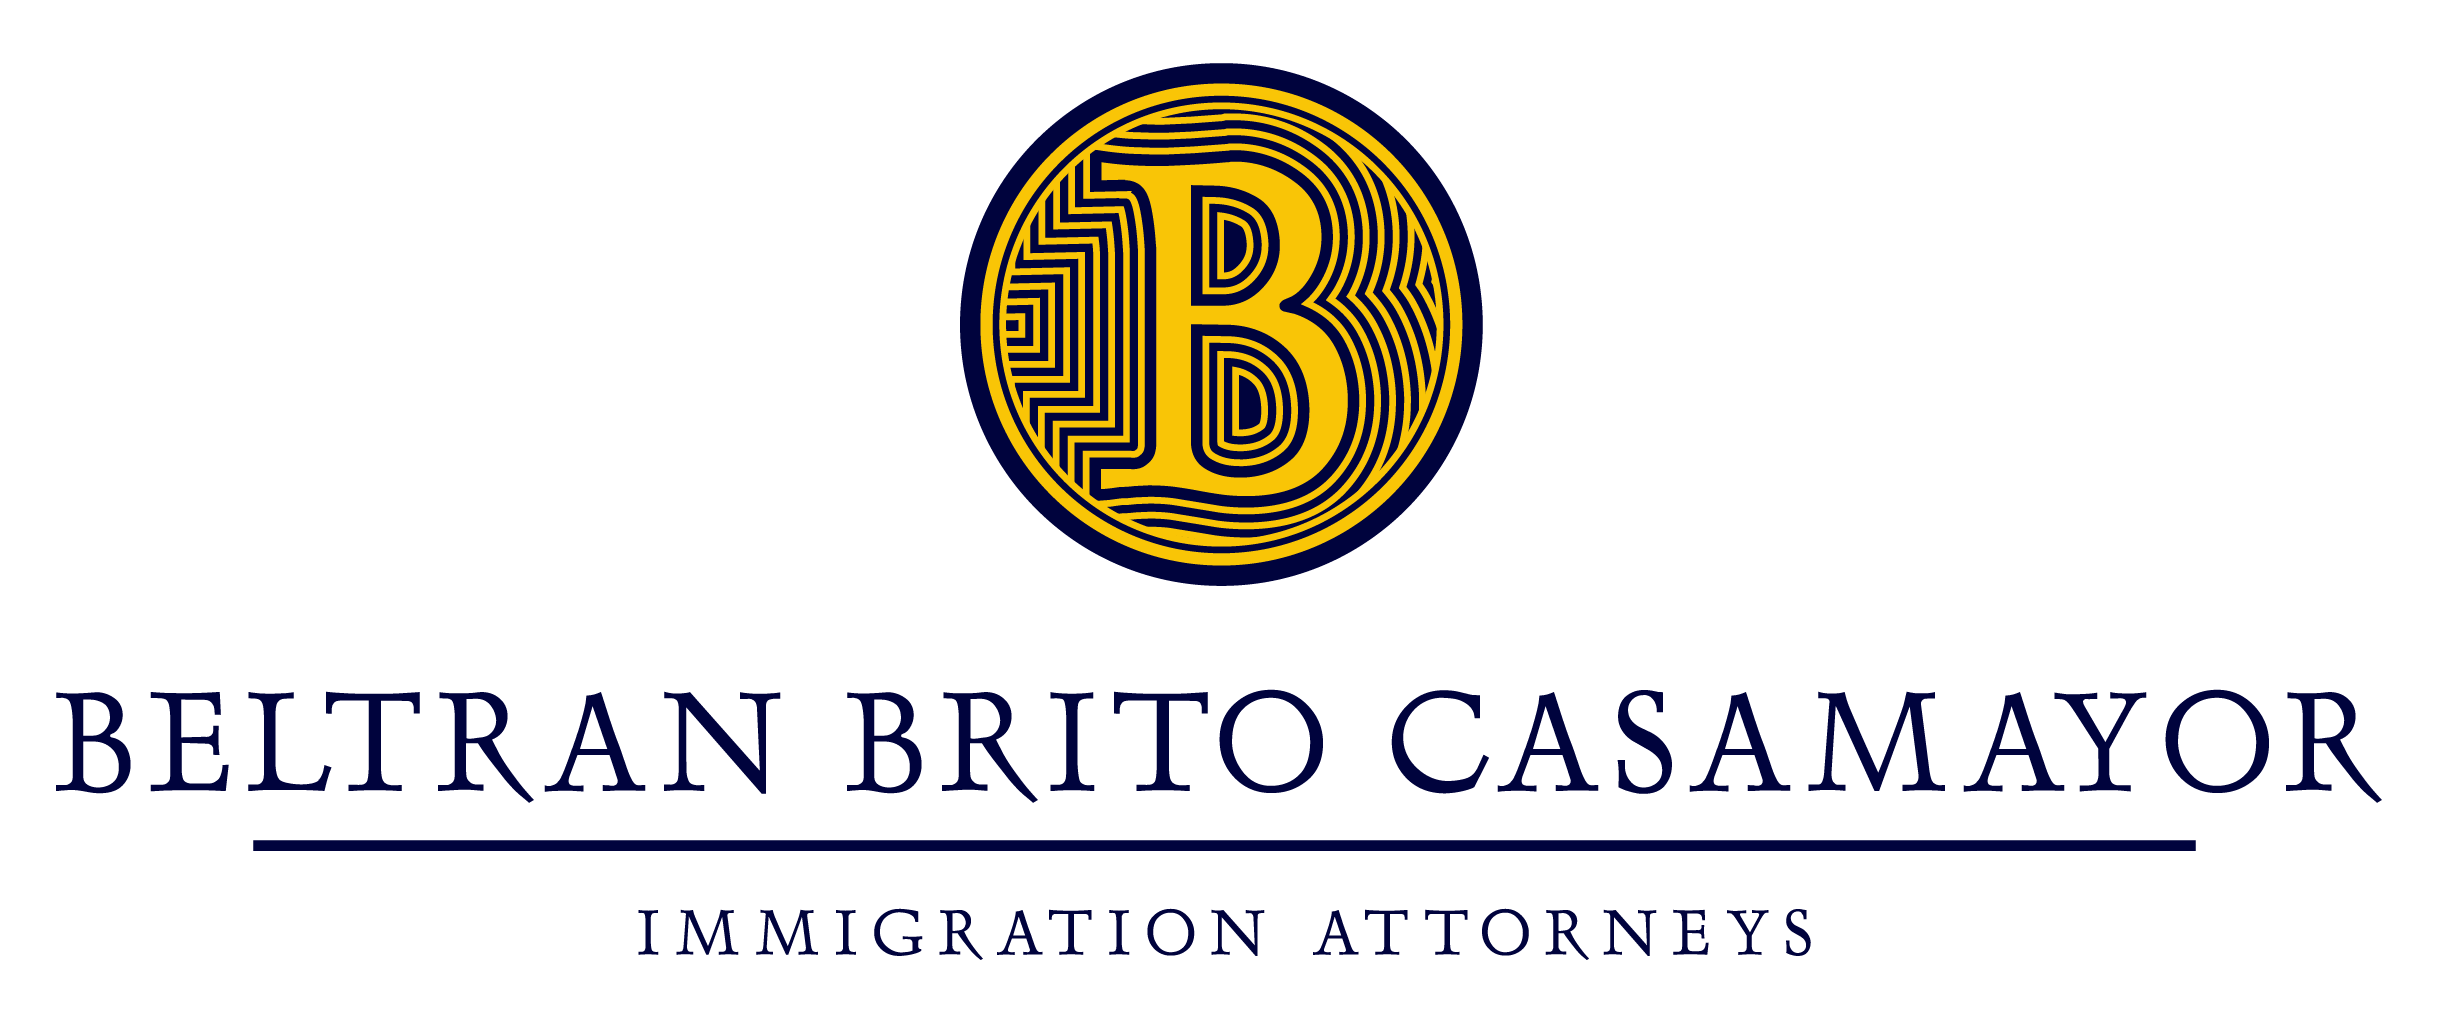 Beltran Brito Casamayor O1 Visa